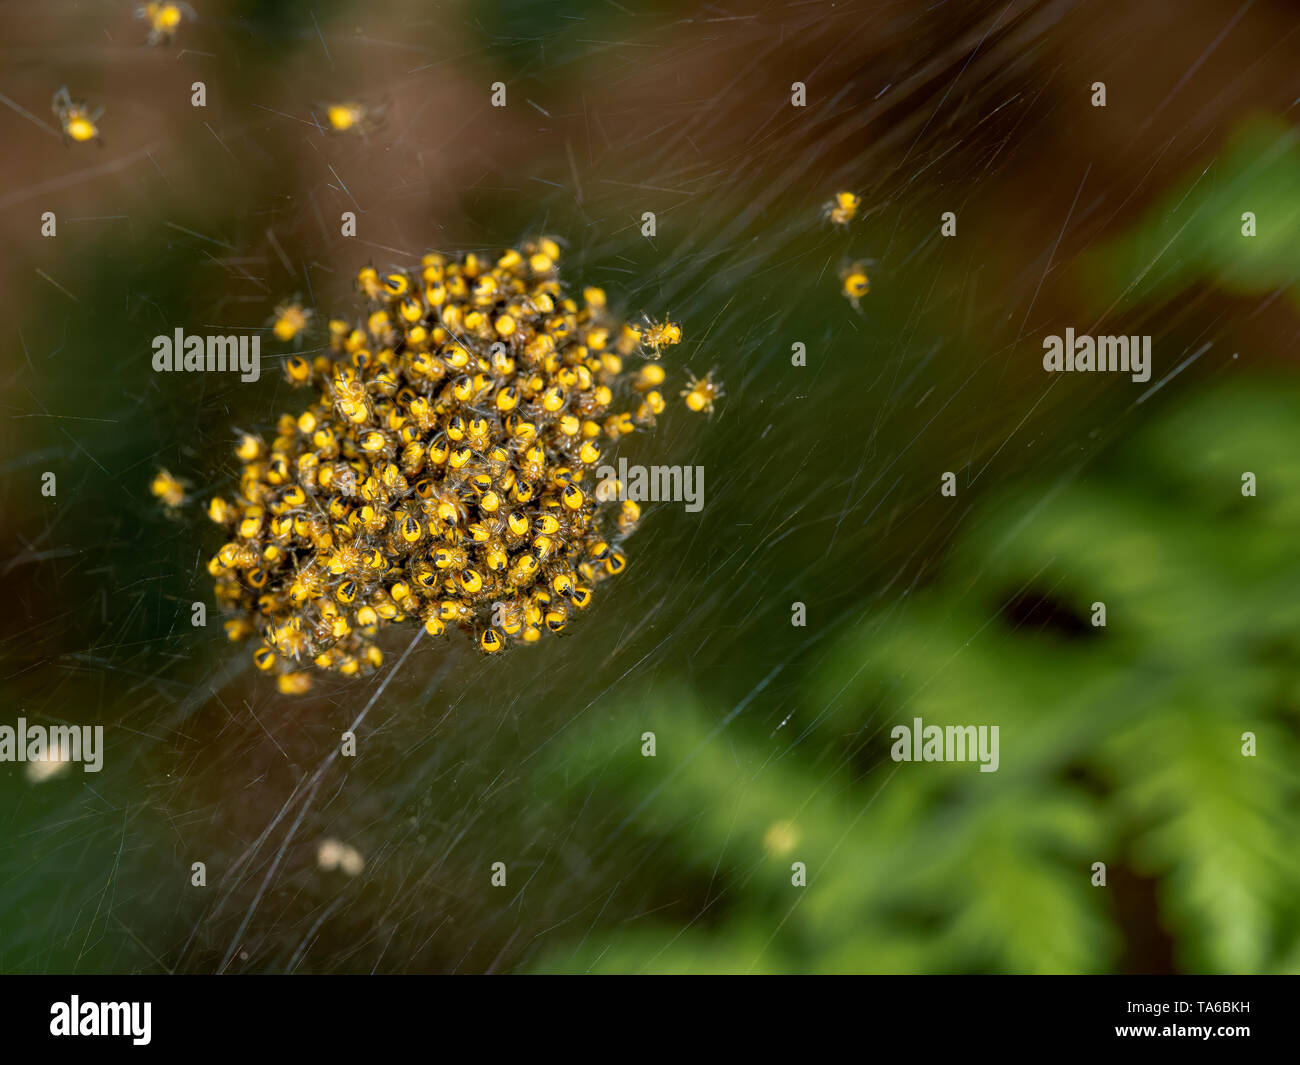 Orb weaver bébé, araignées, petits au nid, jaune et noir, macro. Banque D'Images